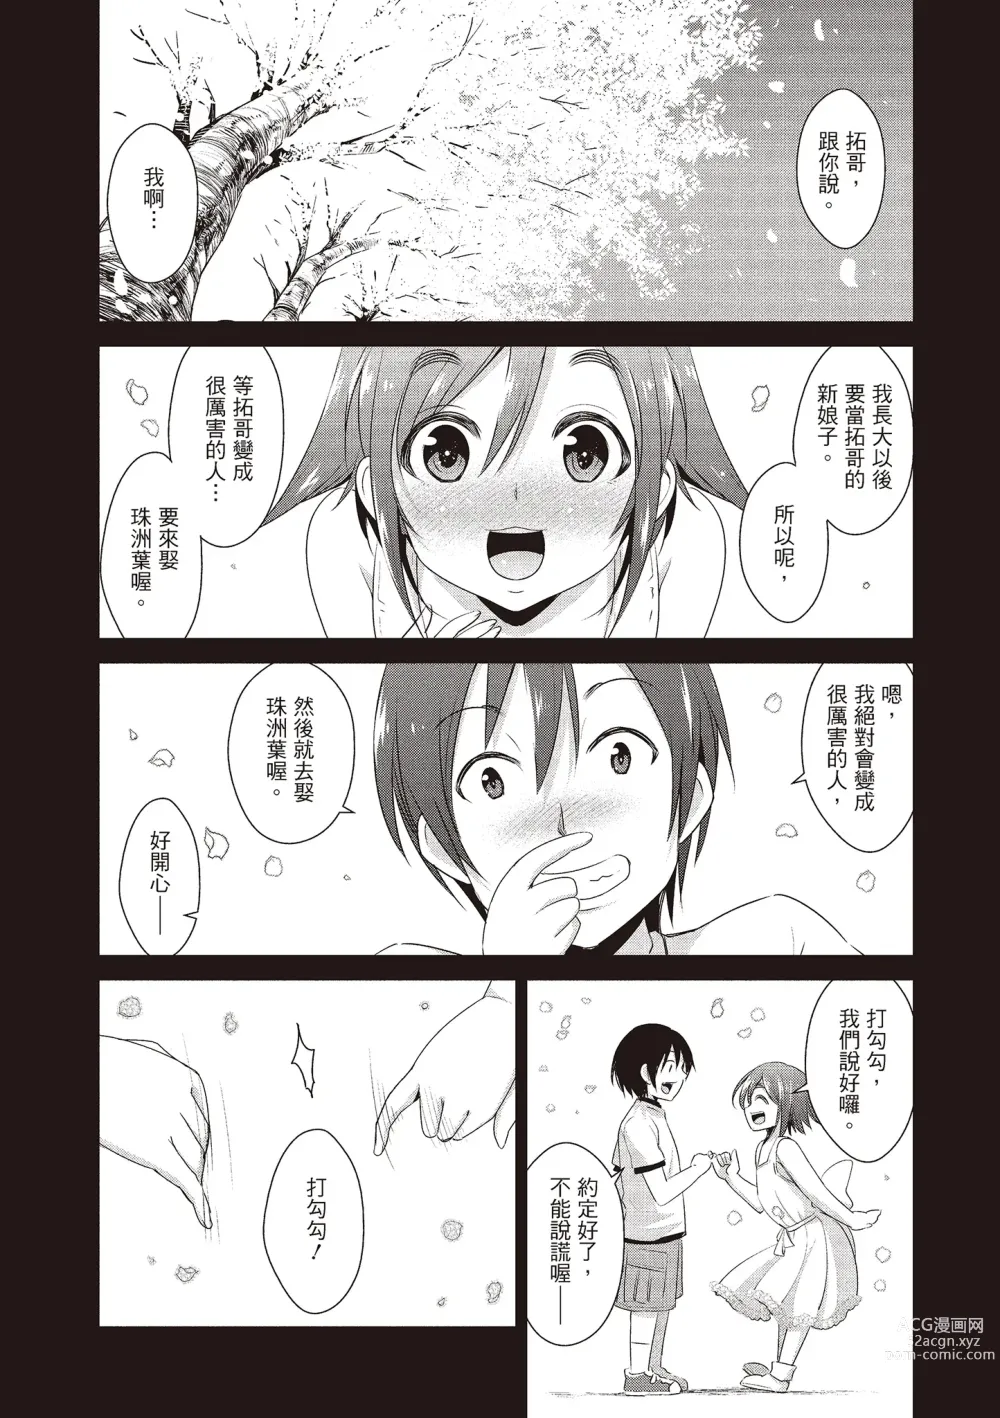 Page 7 of manga 朋友間的淫事